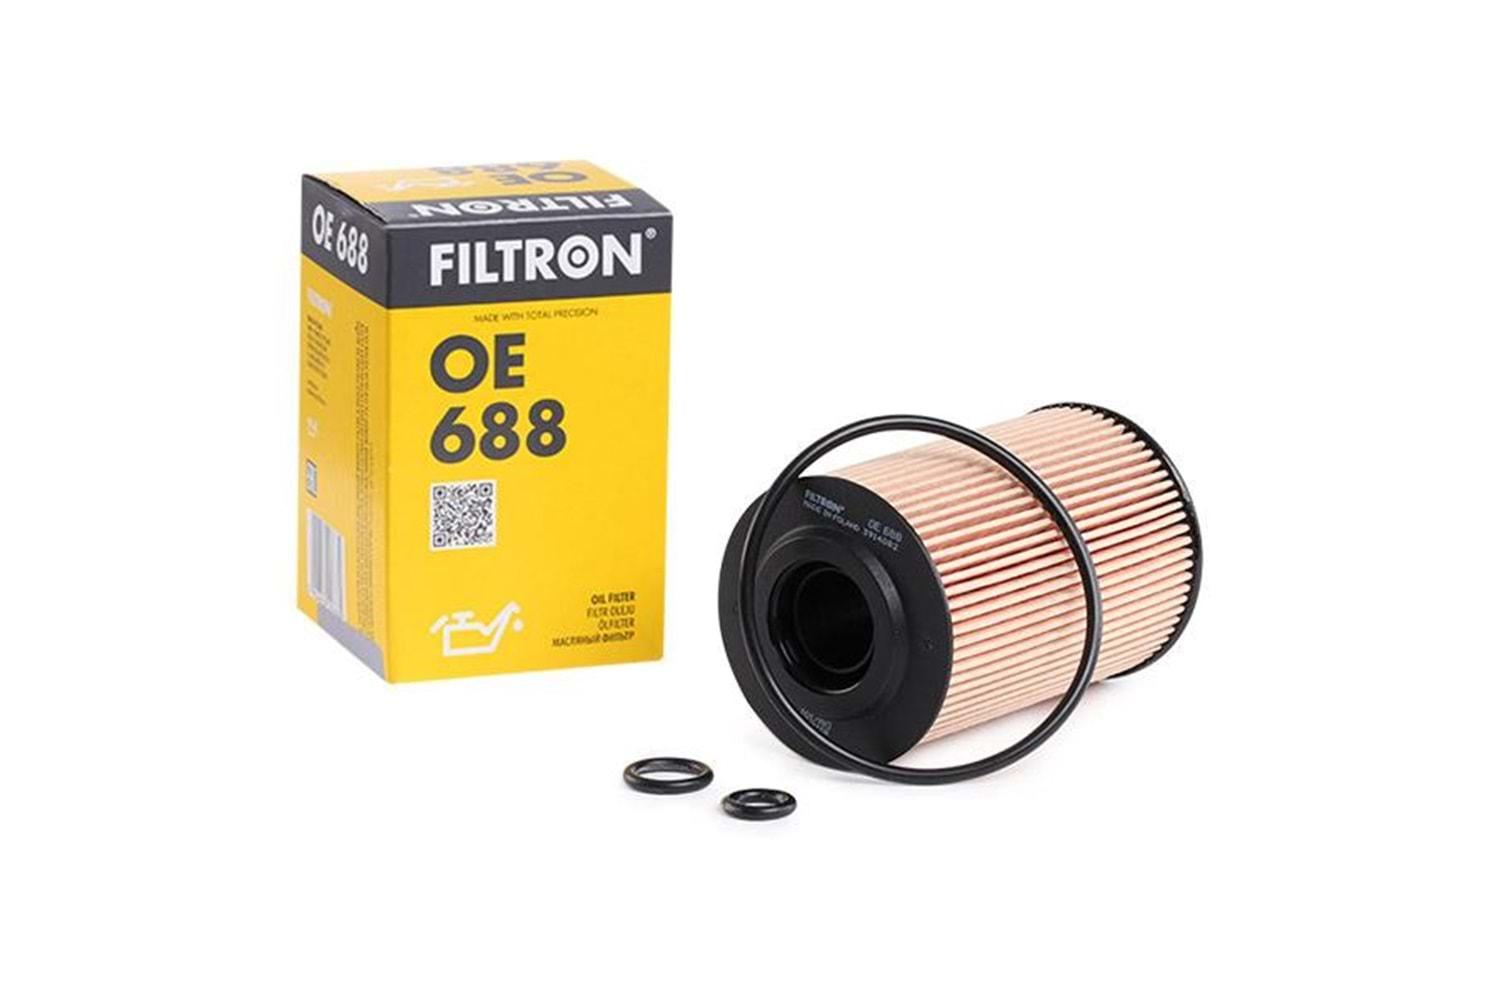 Filtron Yağ Filtresi OE688